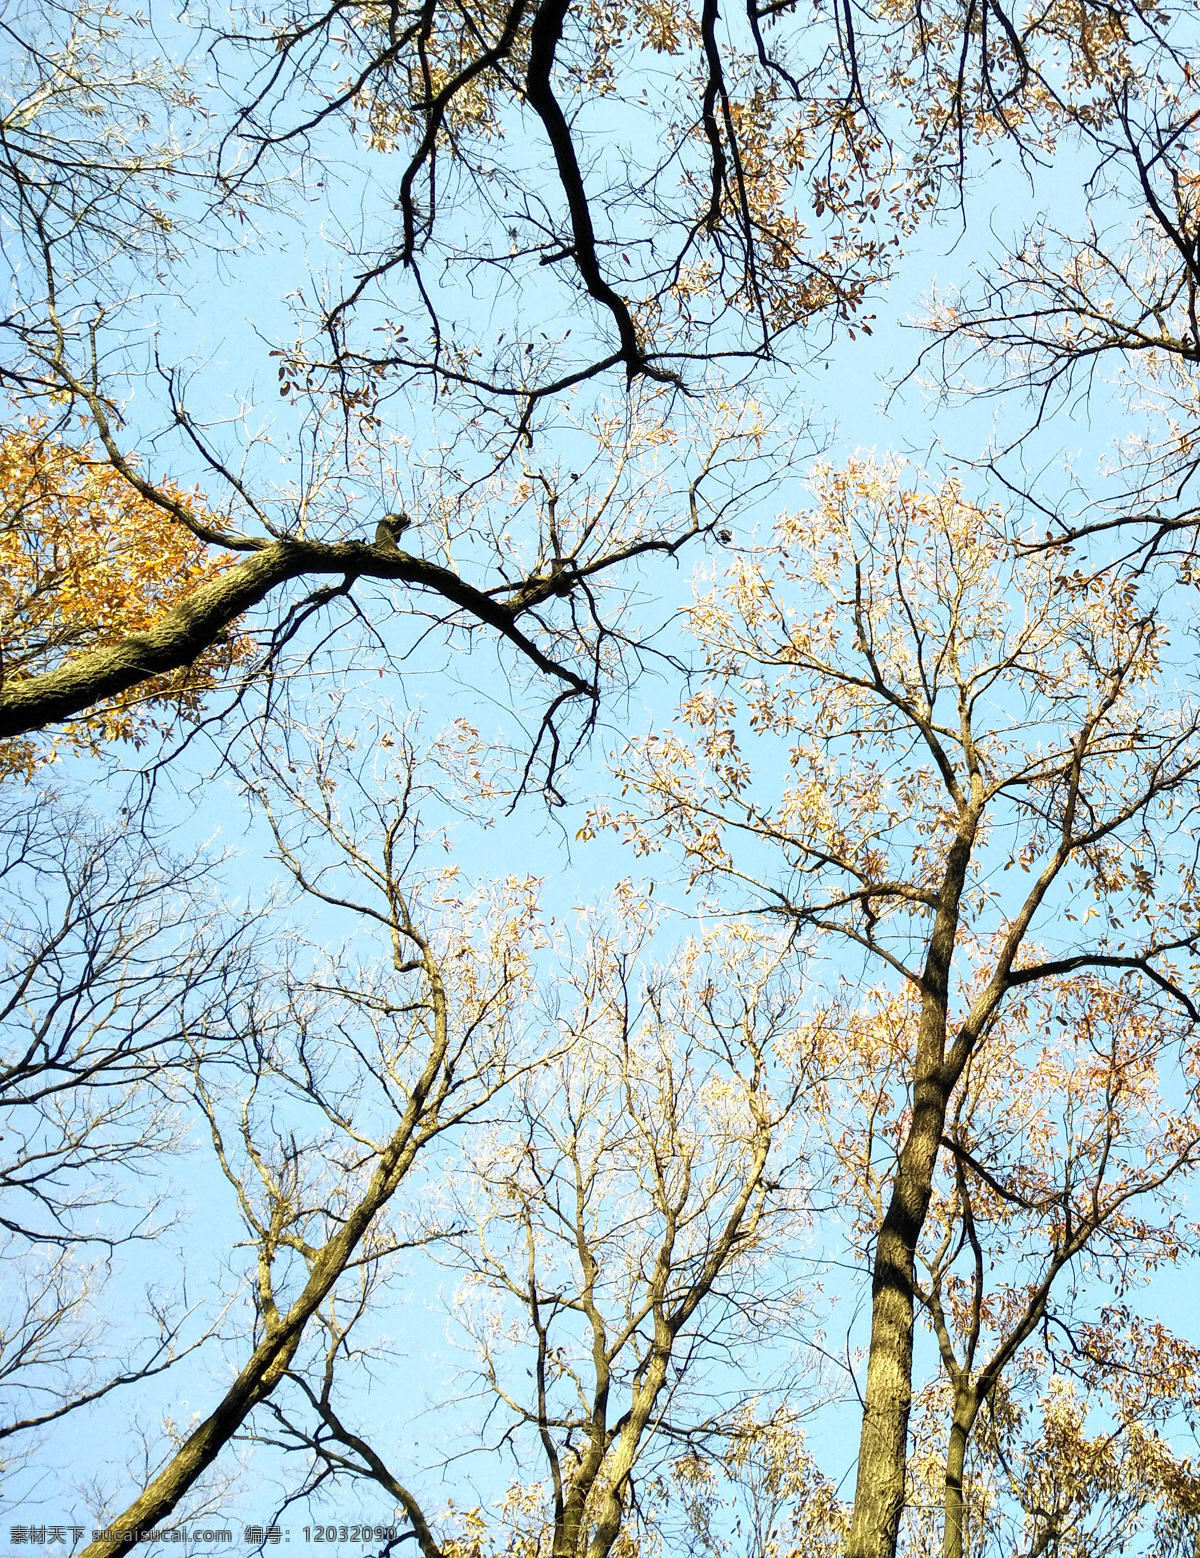 麻栎树冬景 麻栎树 树木 麻栎树图 麻栎树图片 风情树 蓝天树木 麻栎森林 麻栎风景 生物世界 树木树叶